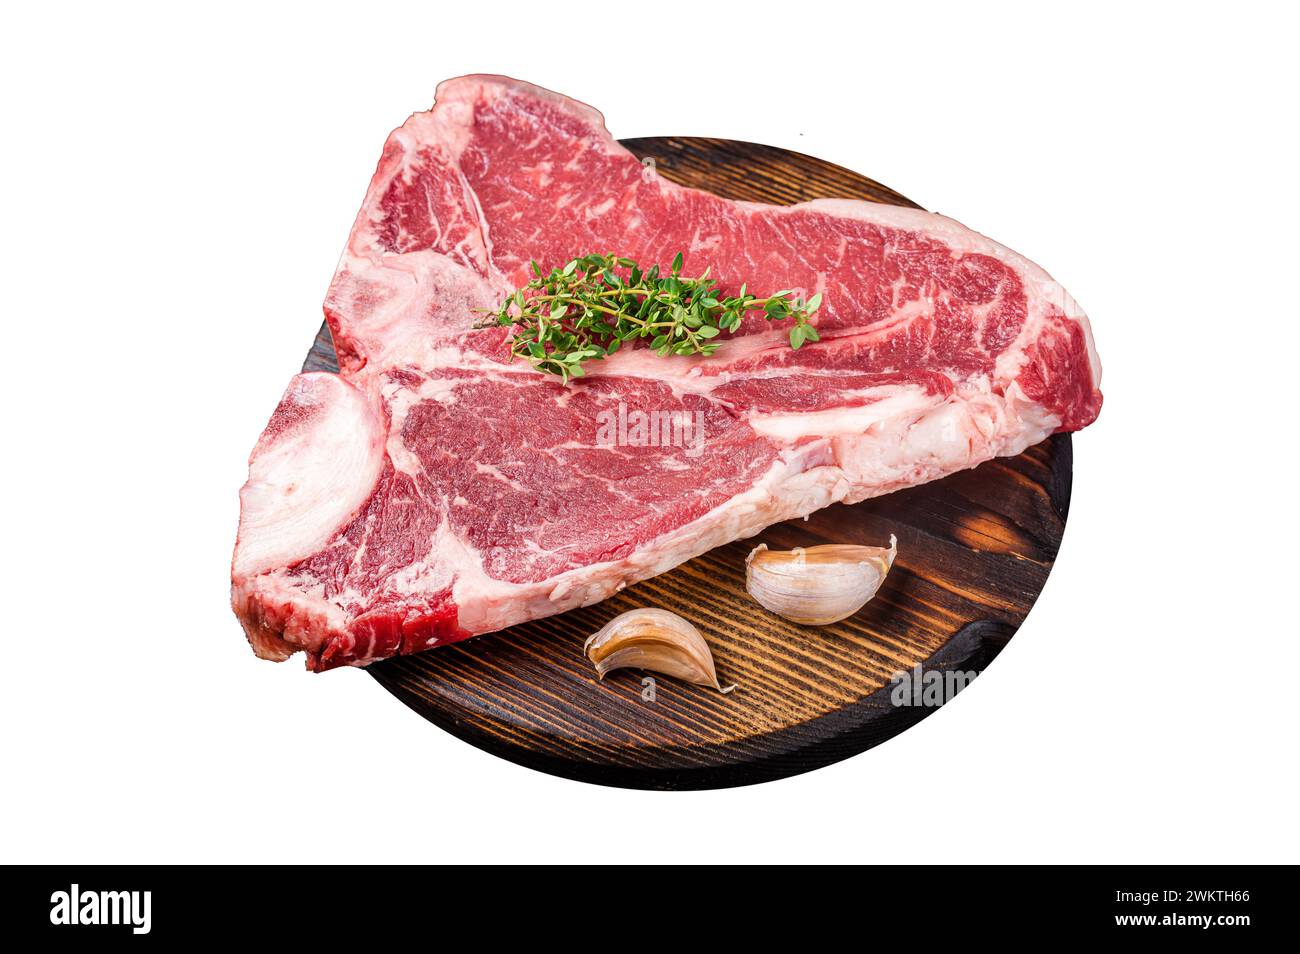 Steak cru de Porterhouse, viande de bœuf marbrée sur une planche de bois. Isolé sur fond blanc Banque D'Images